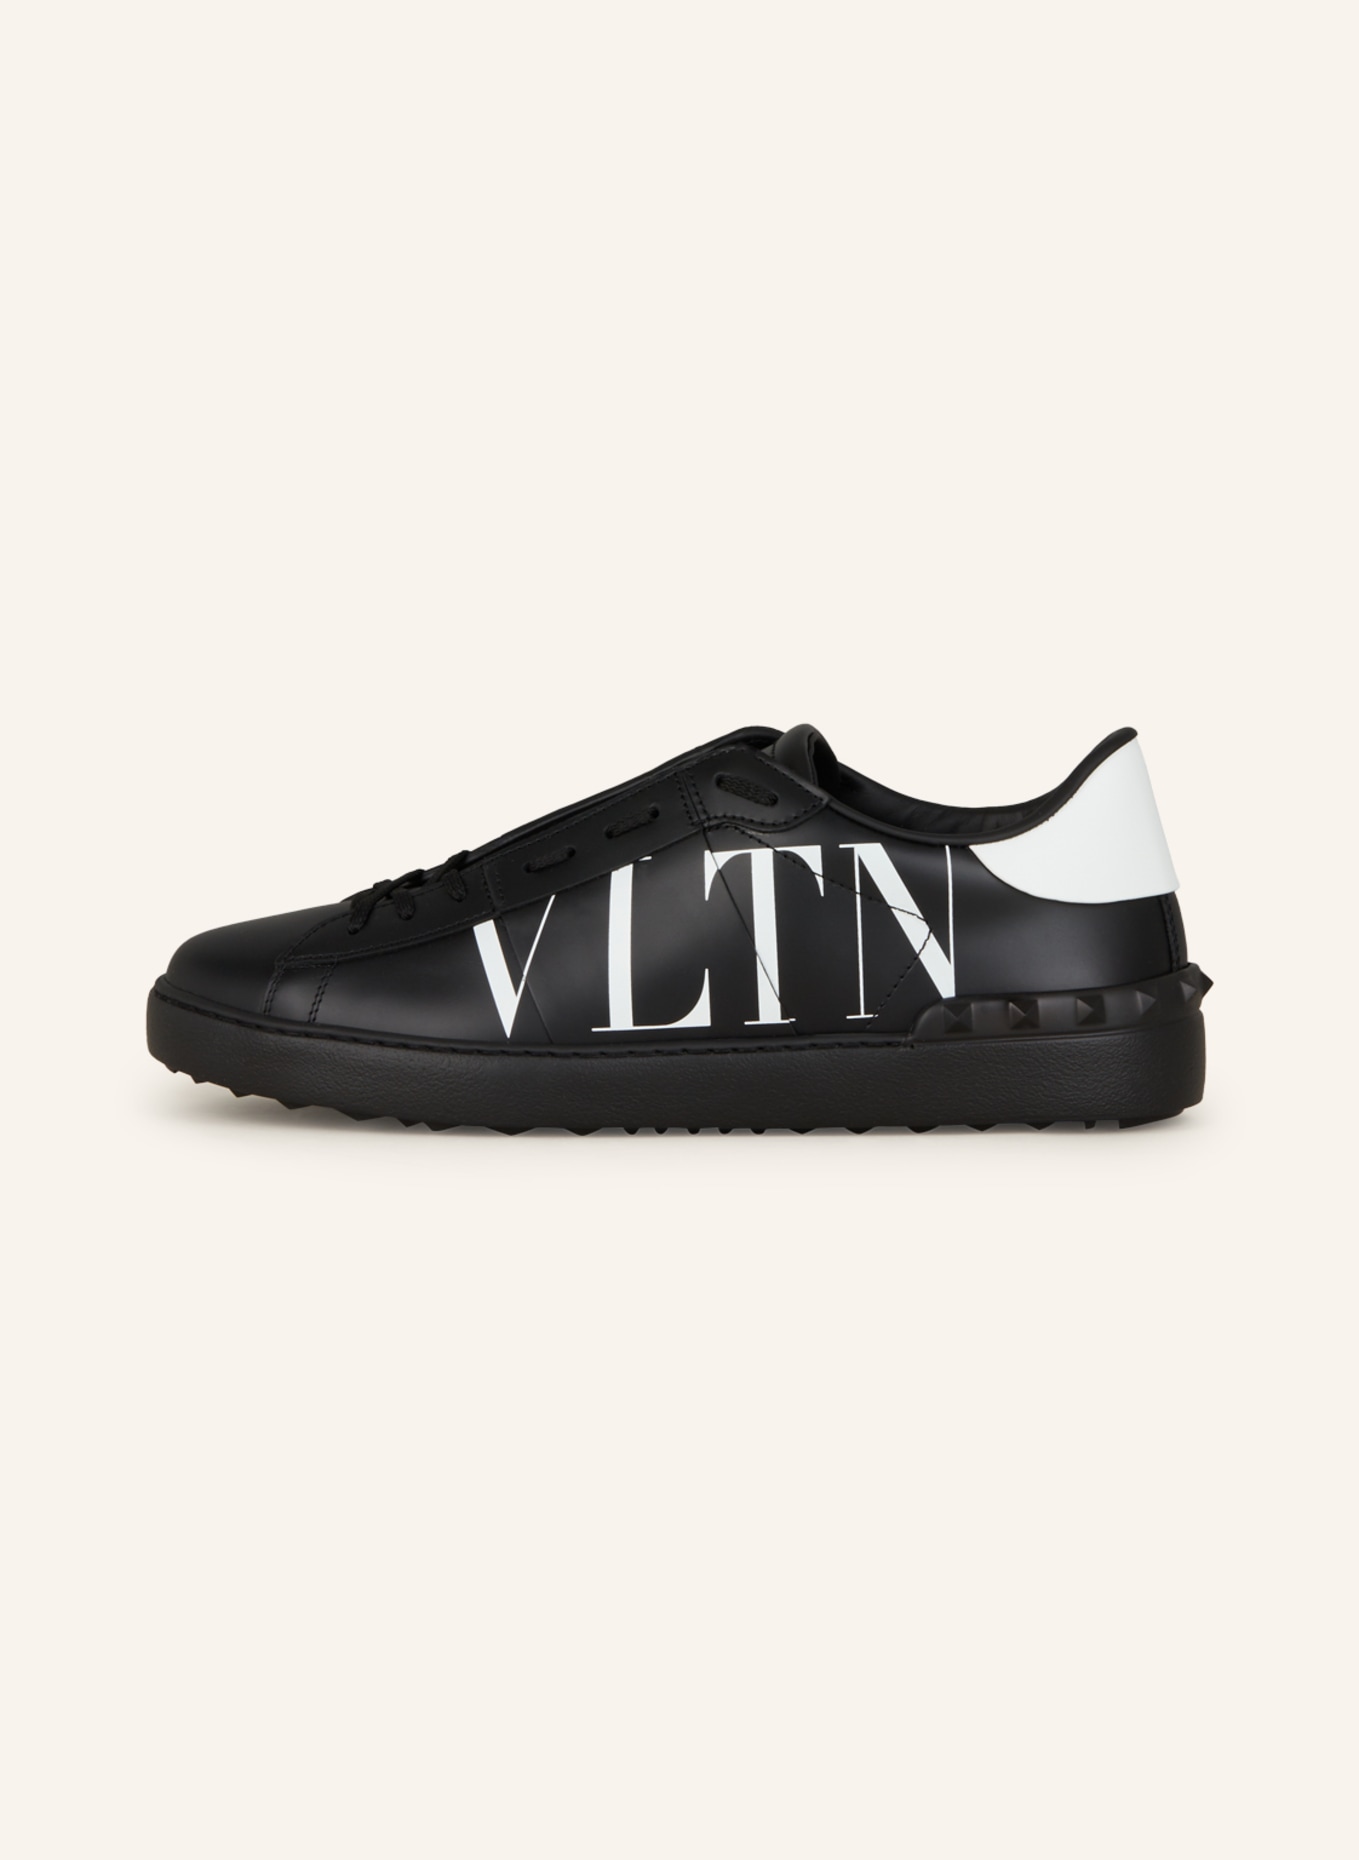 VALENTINO GARAVANI Sneakers OPEN VLTN in black/ white